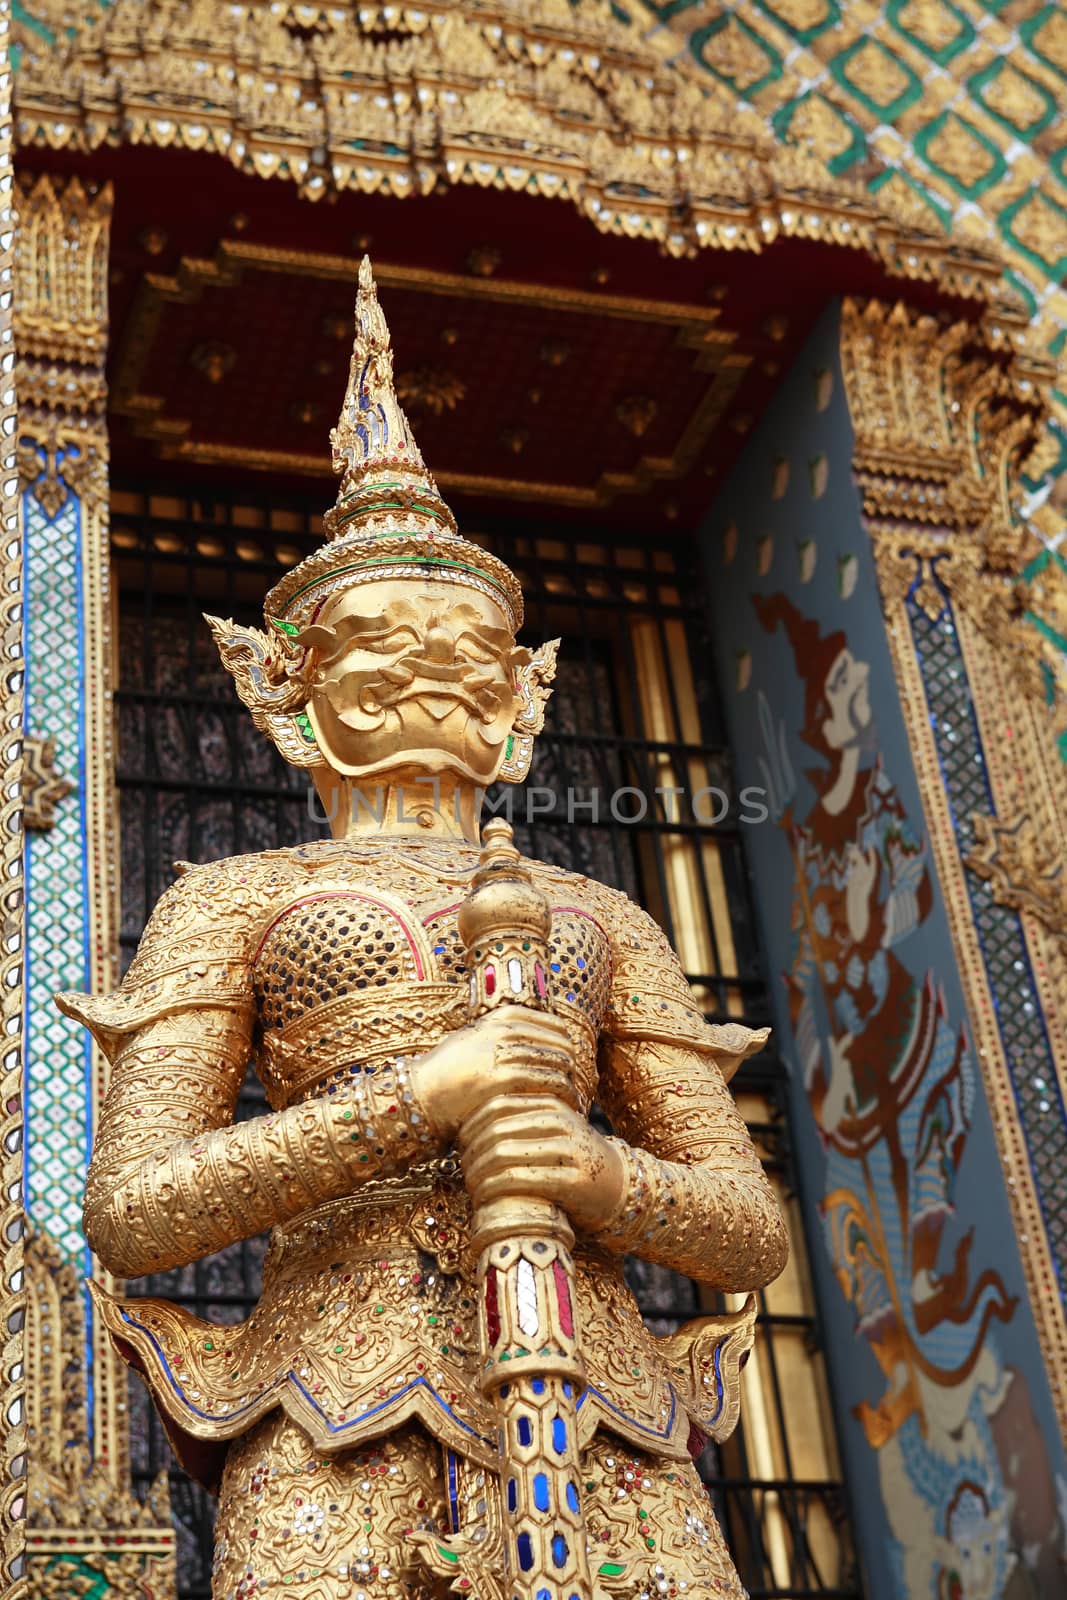 Temple of the Emerald Buddha, Royal Palace in Bangkok, Thailand. Full official name Wat Phra Si Rattana Satsadaram